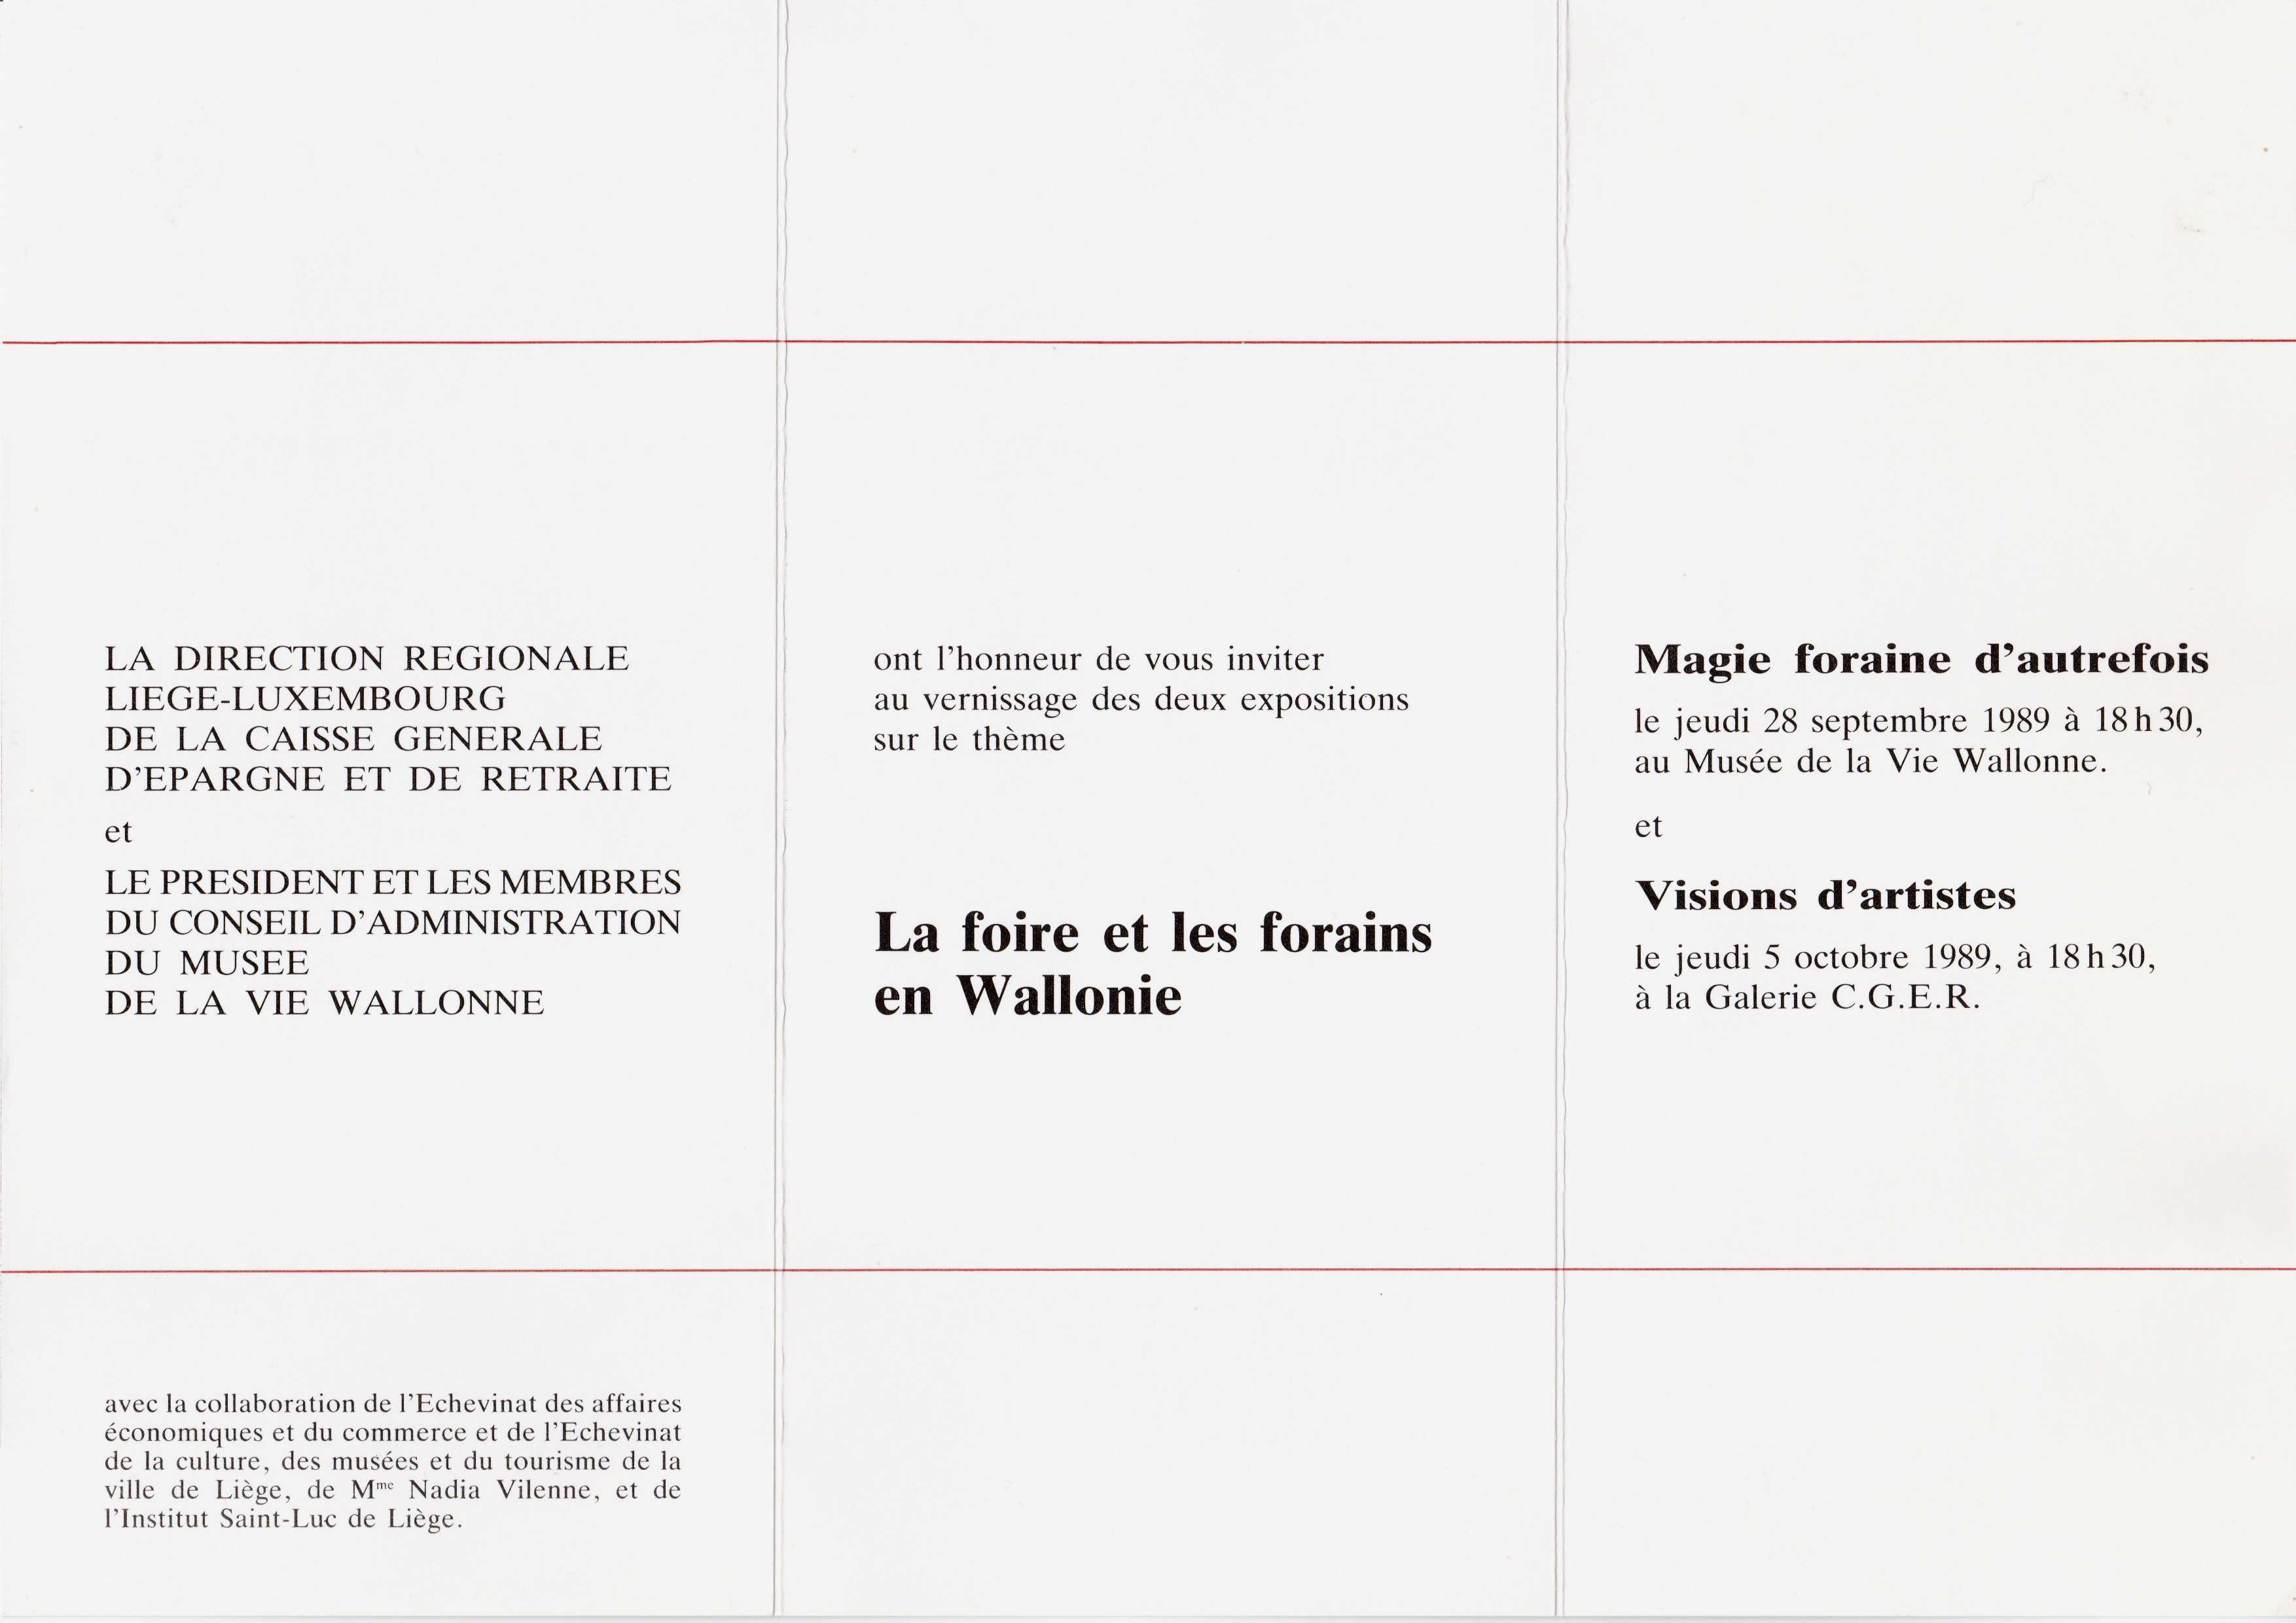 La foire et les forains en Wallonie, Visions d’artistes, liège, 1989